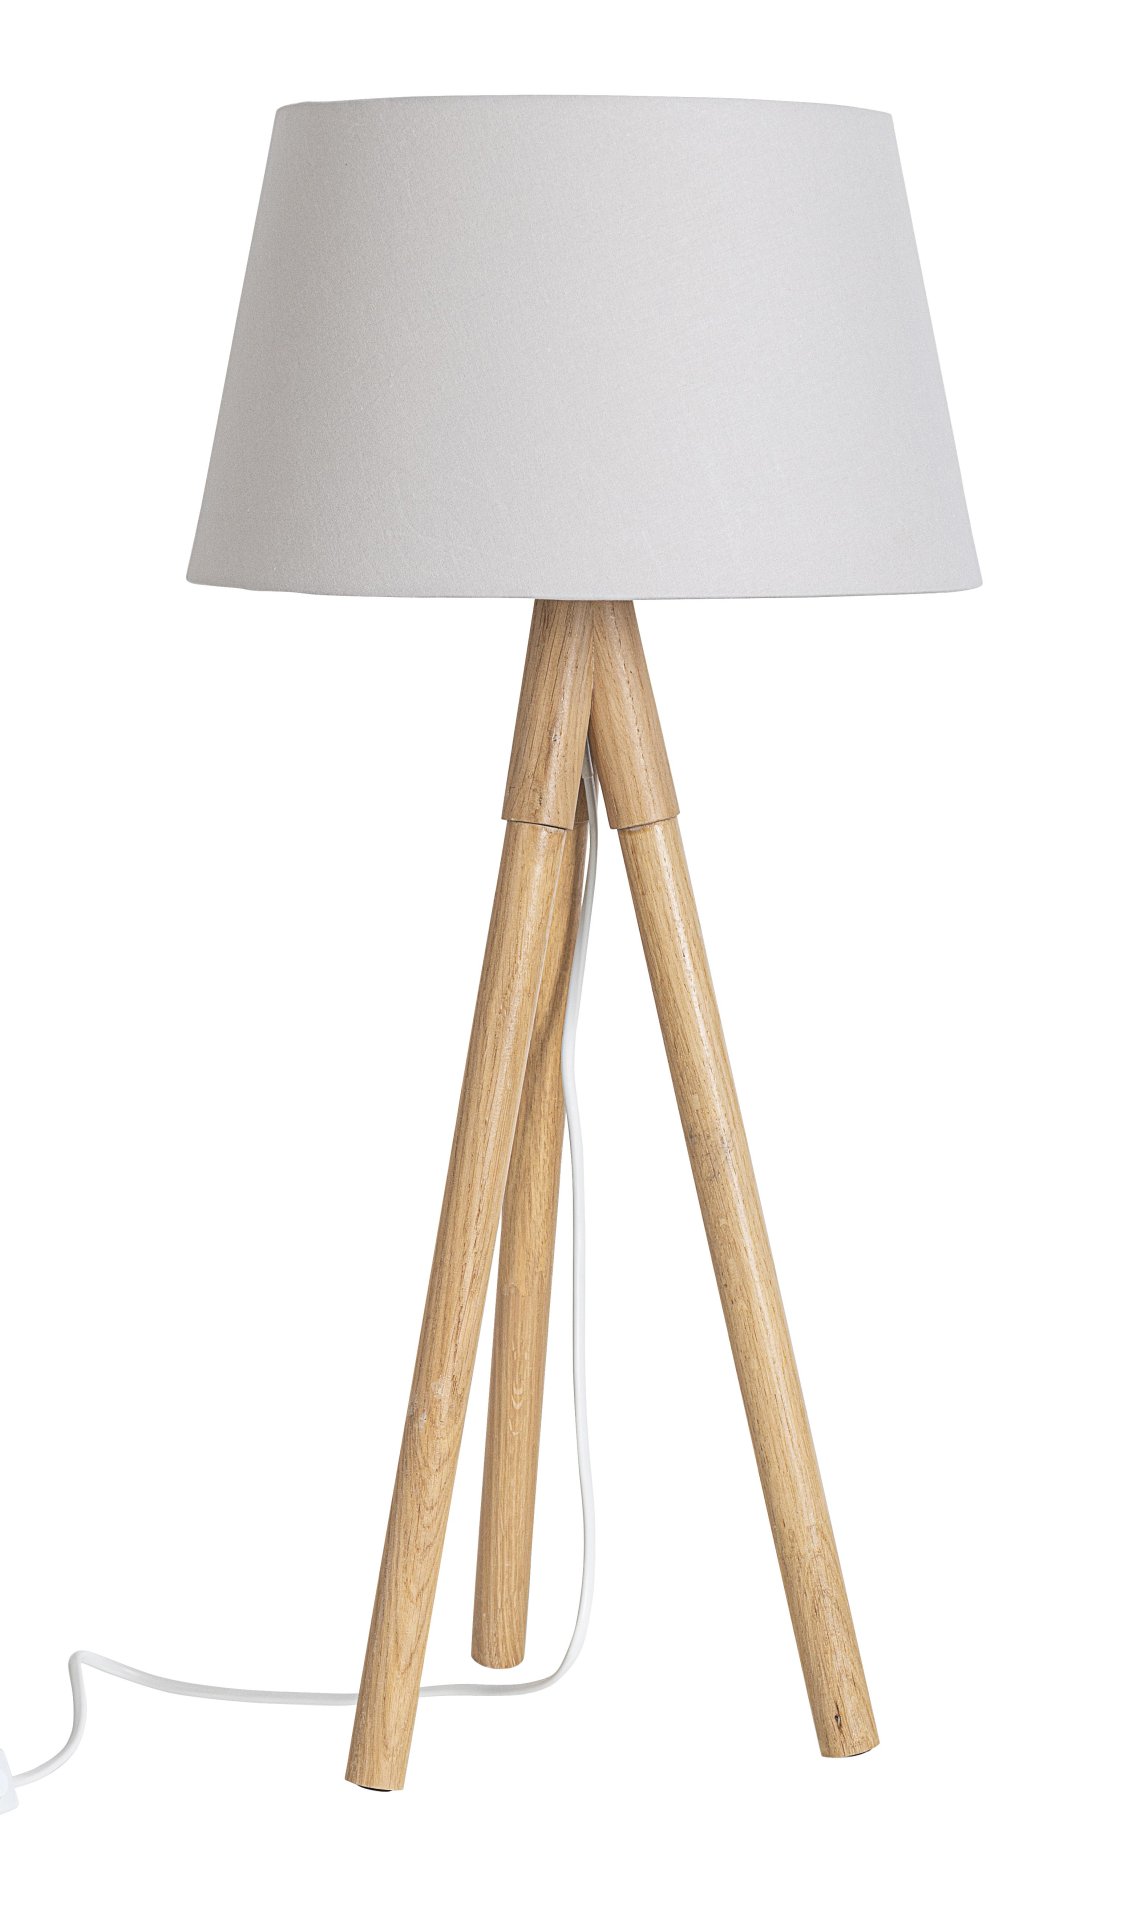 Die Tischleuchte Wallas überzeugt mit ihrem klassischen Design. Gefertigt wurde sie aus Tannenholz, welches einen grauen Farbton besitzt. Der Lampenschirm ist aus Terital und hat eine weiße Farbe. Die Lampe besitzt eine Höhe von 69 cm.